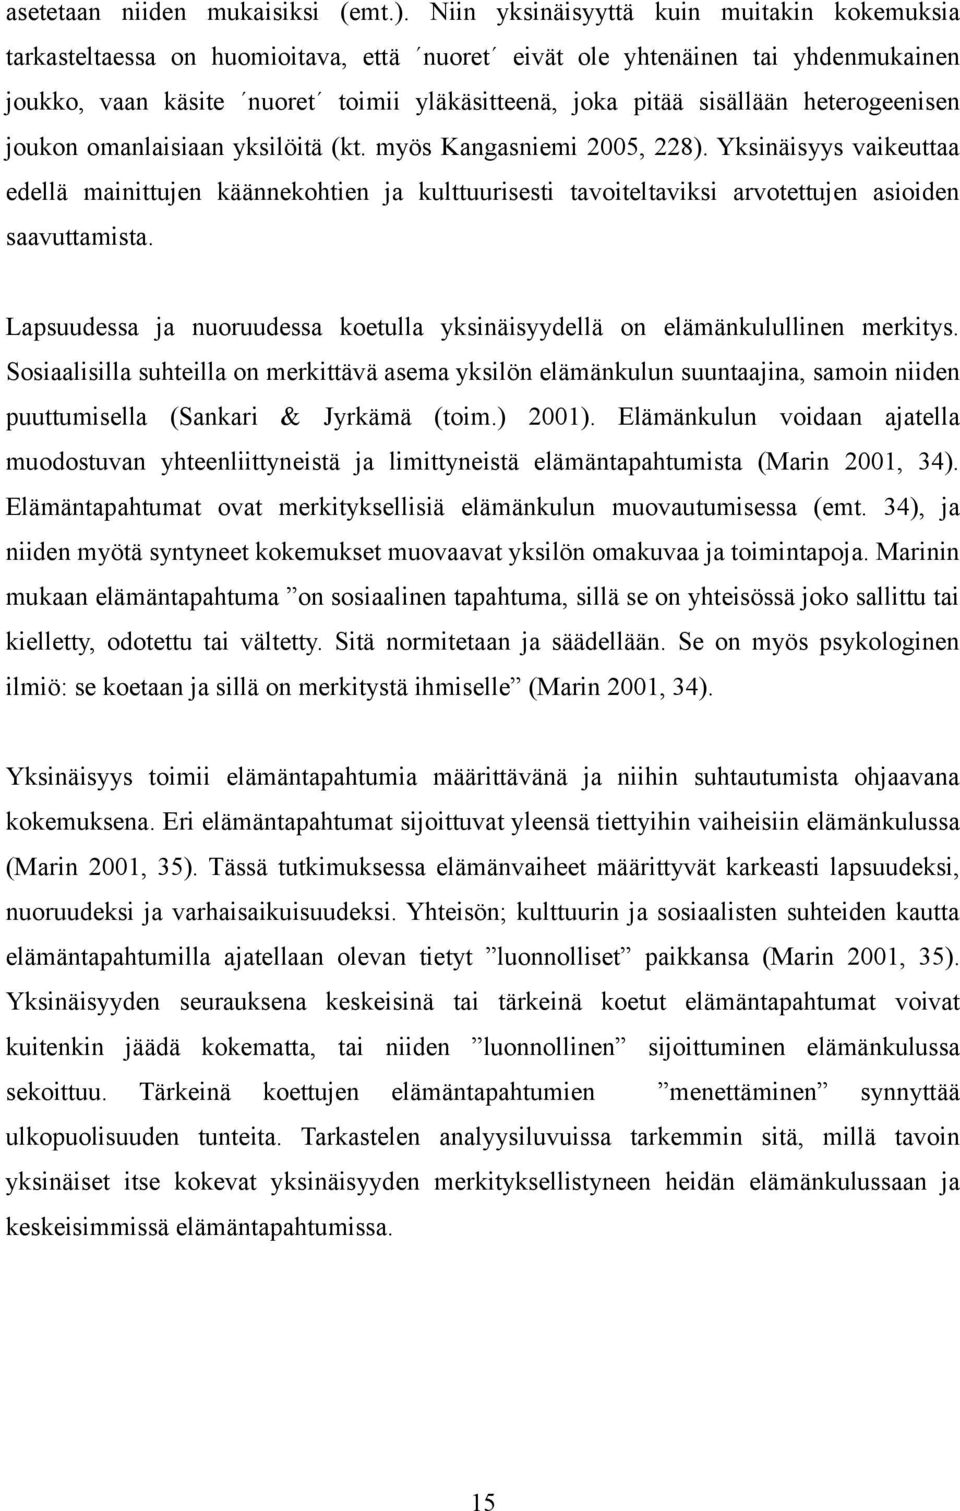 heterogeenisen joukon omanlaisiaan yksilöitä (kt. myös Kangasniemi 2005, 228).